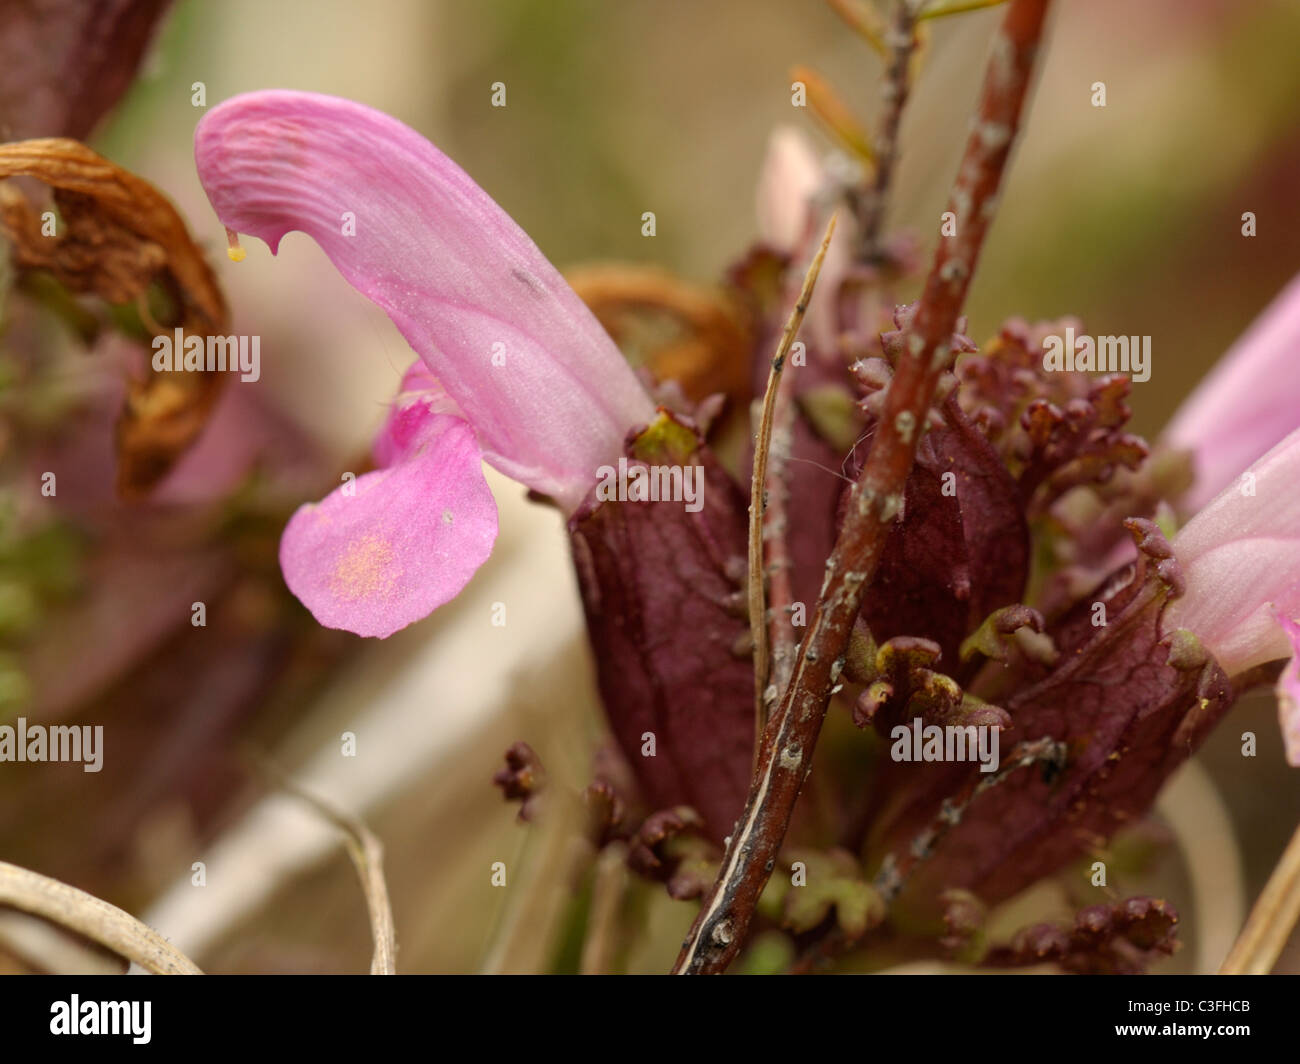 Lousewort, pedicularis sylvatica Stock Photo